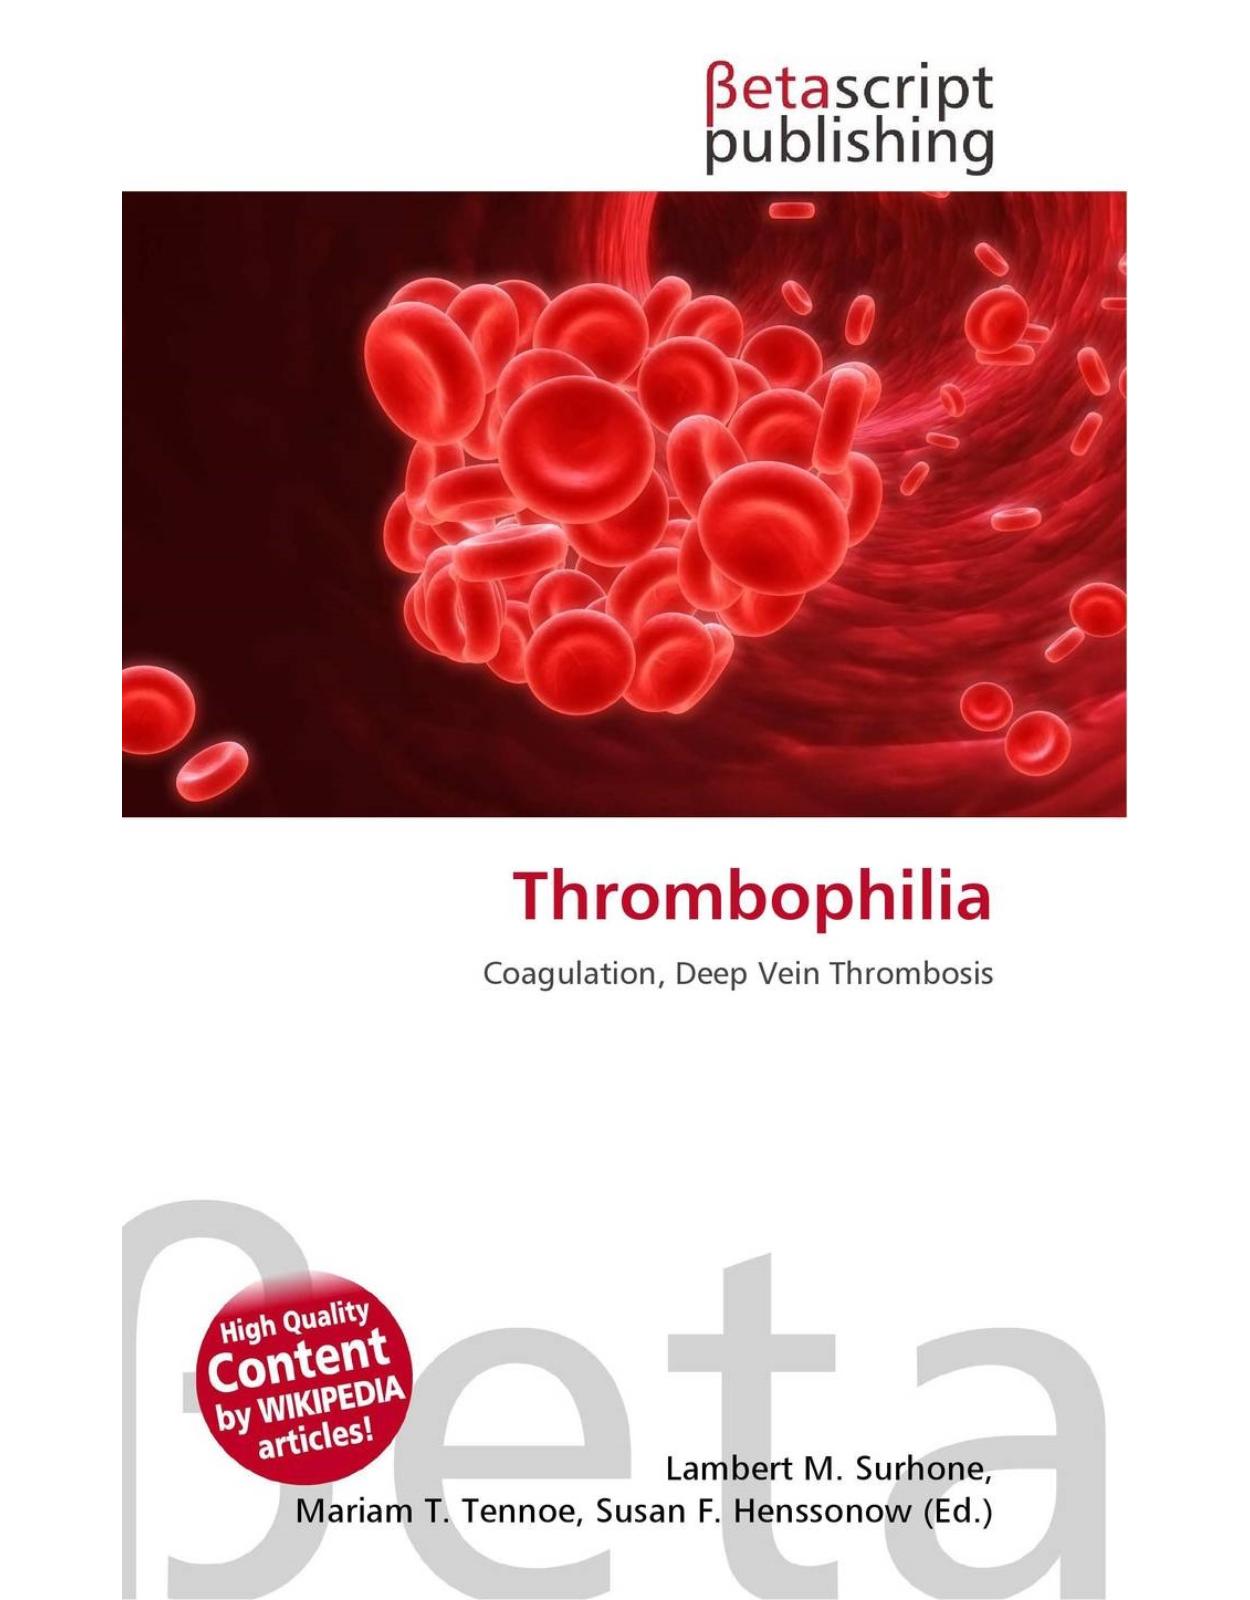 Thrombophilia